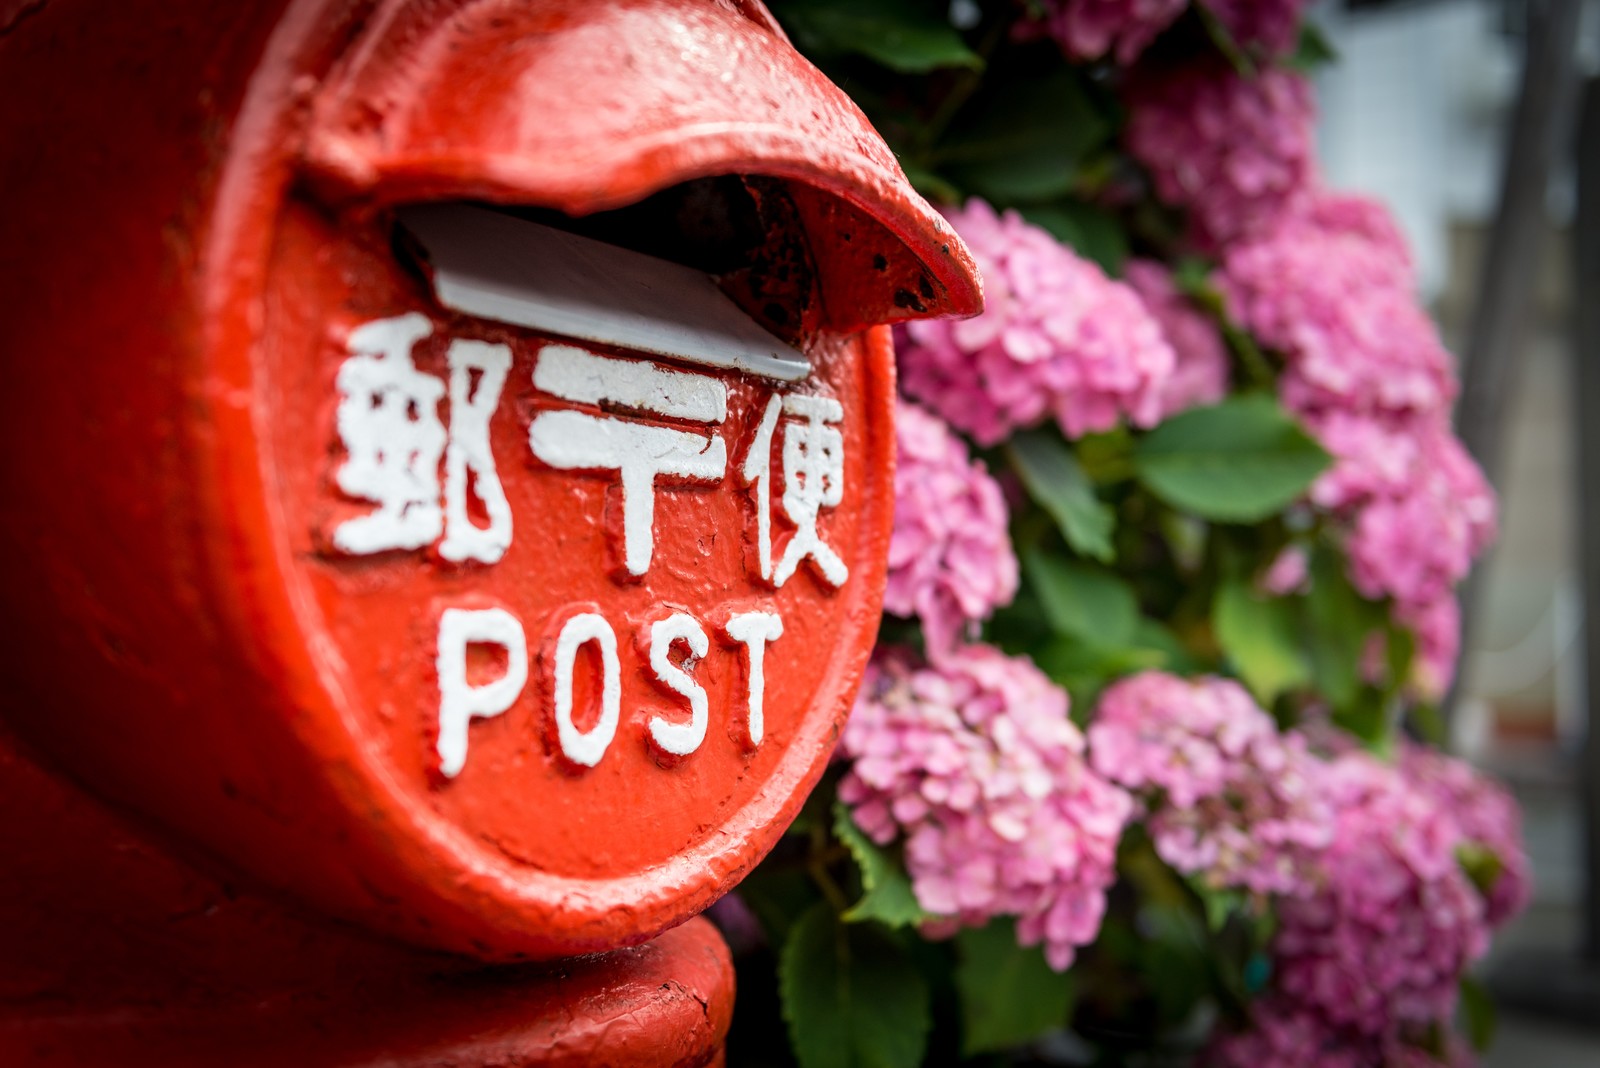 日本郵便の中途採用の年収や評判を元社員が語る 転職の難易度